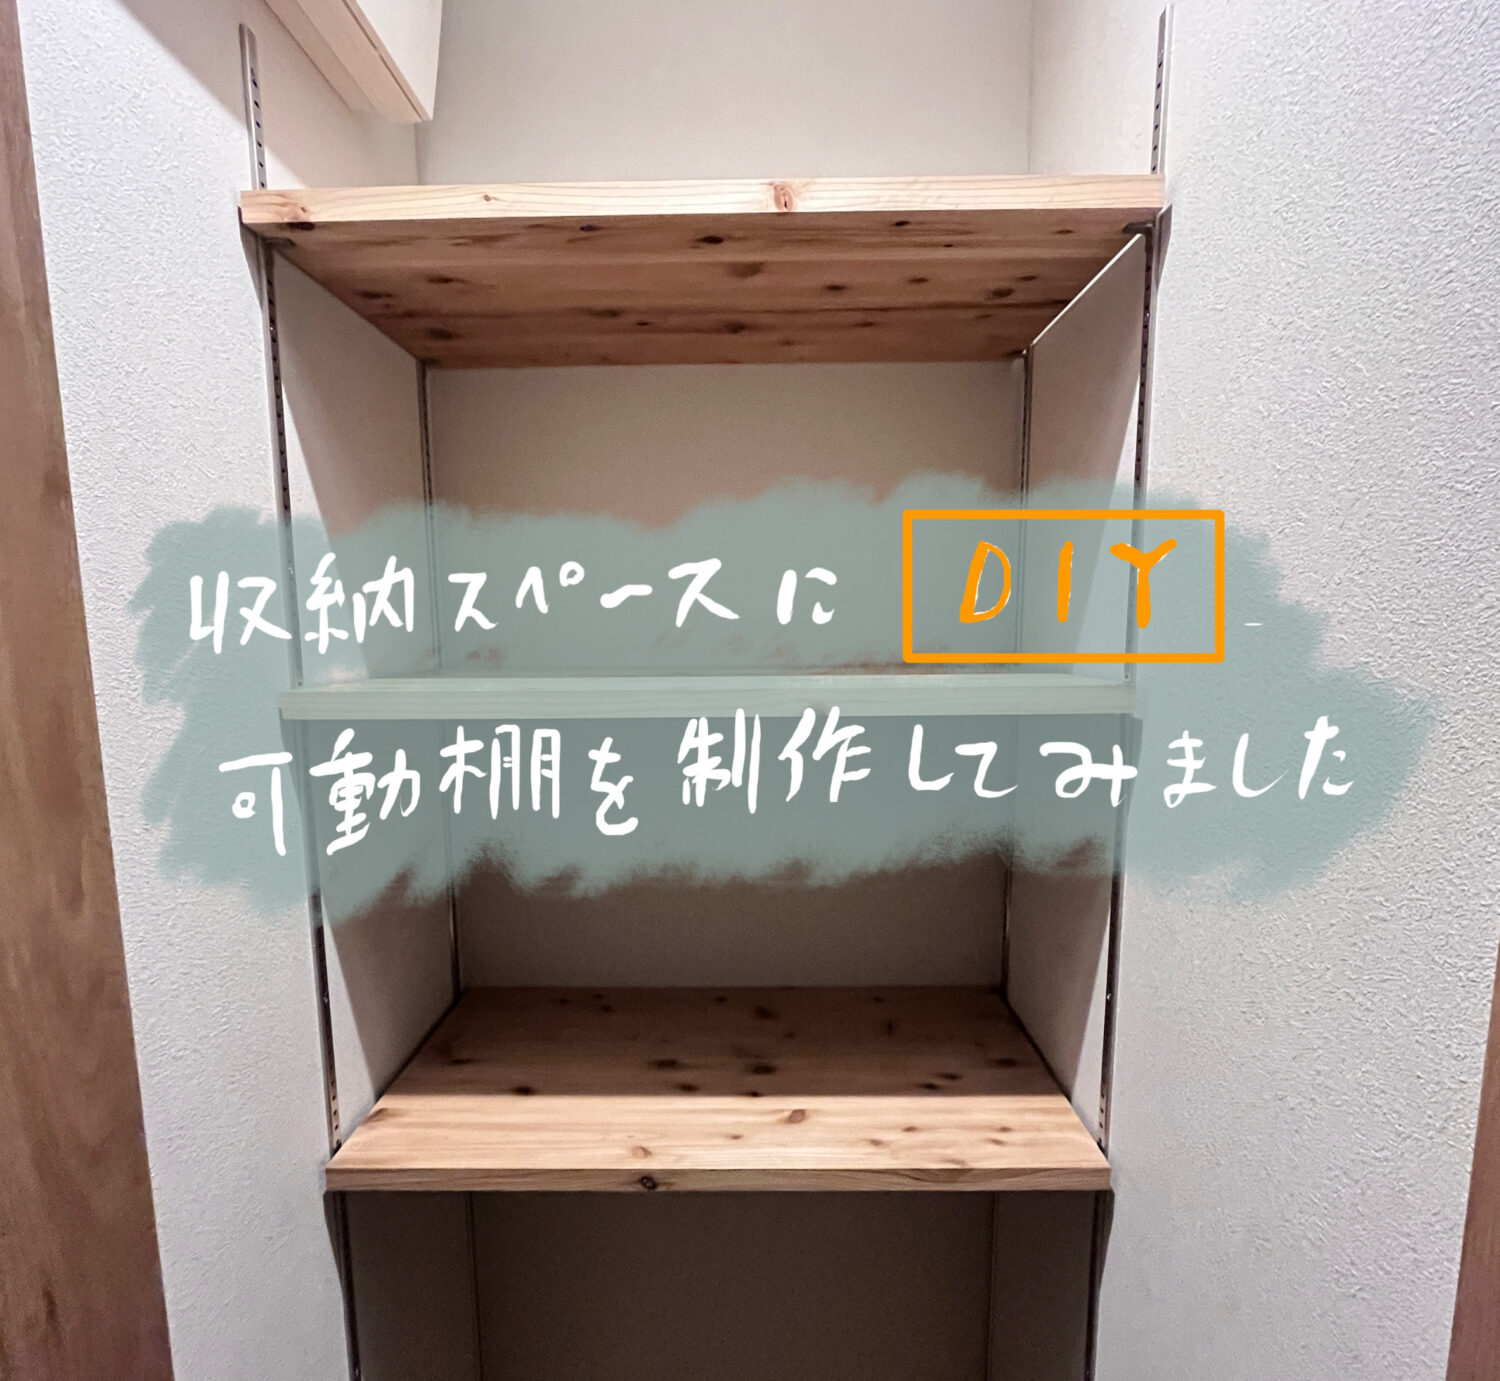 【DIY】収納スペースに可動棚を制作してみた。